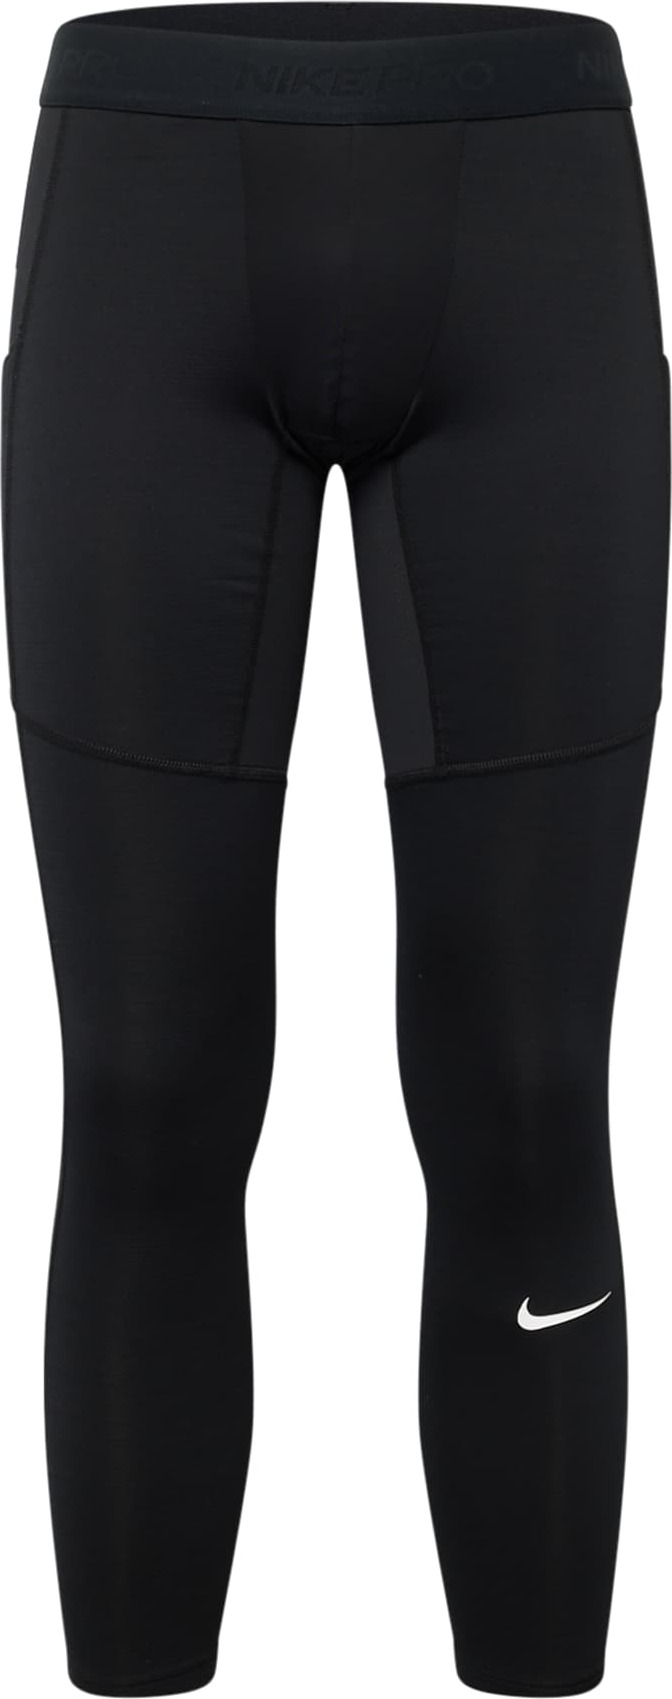 Sportovní kalhoty 'Pro Warm' Nike černá / bílá